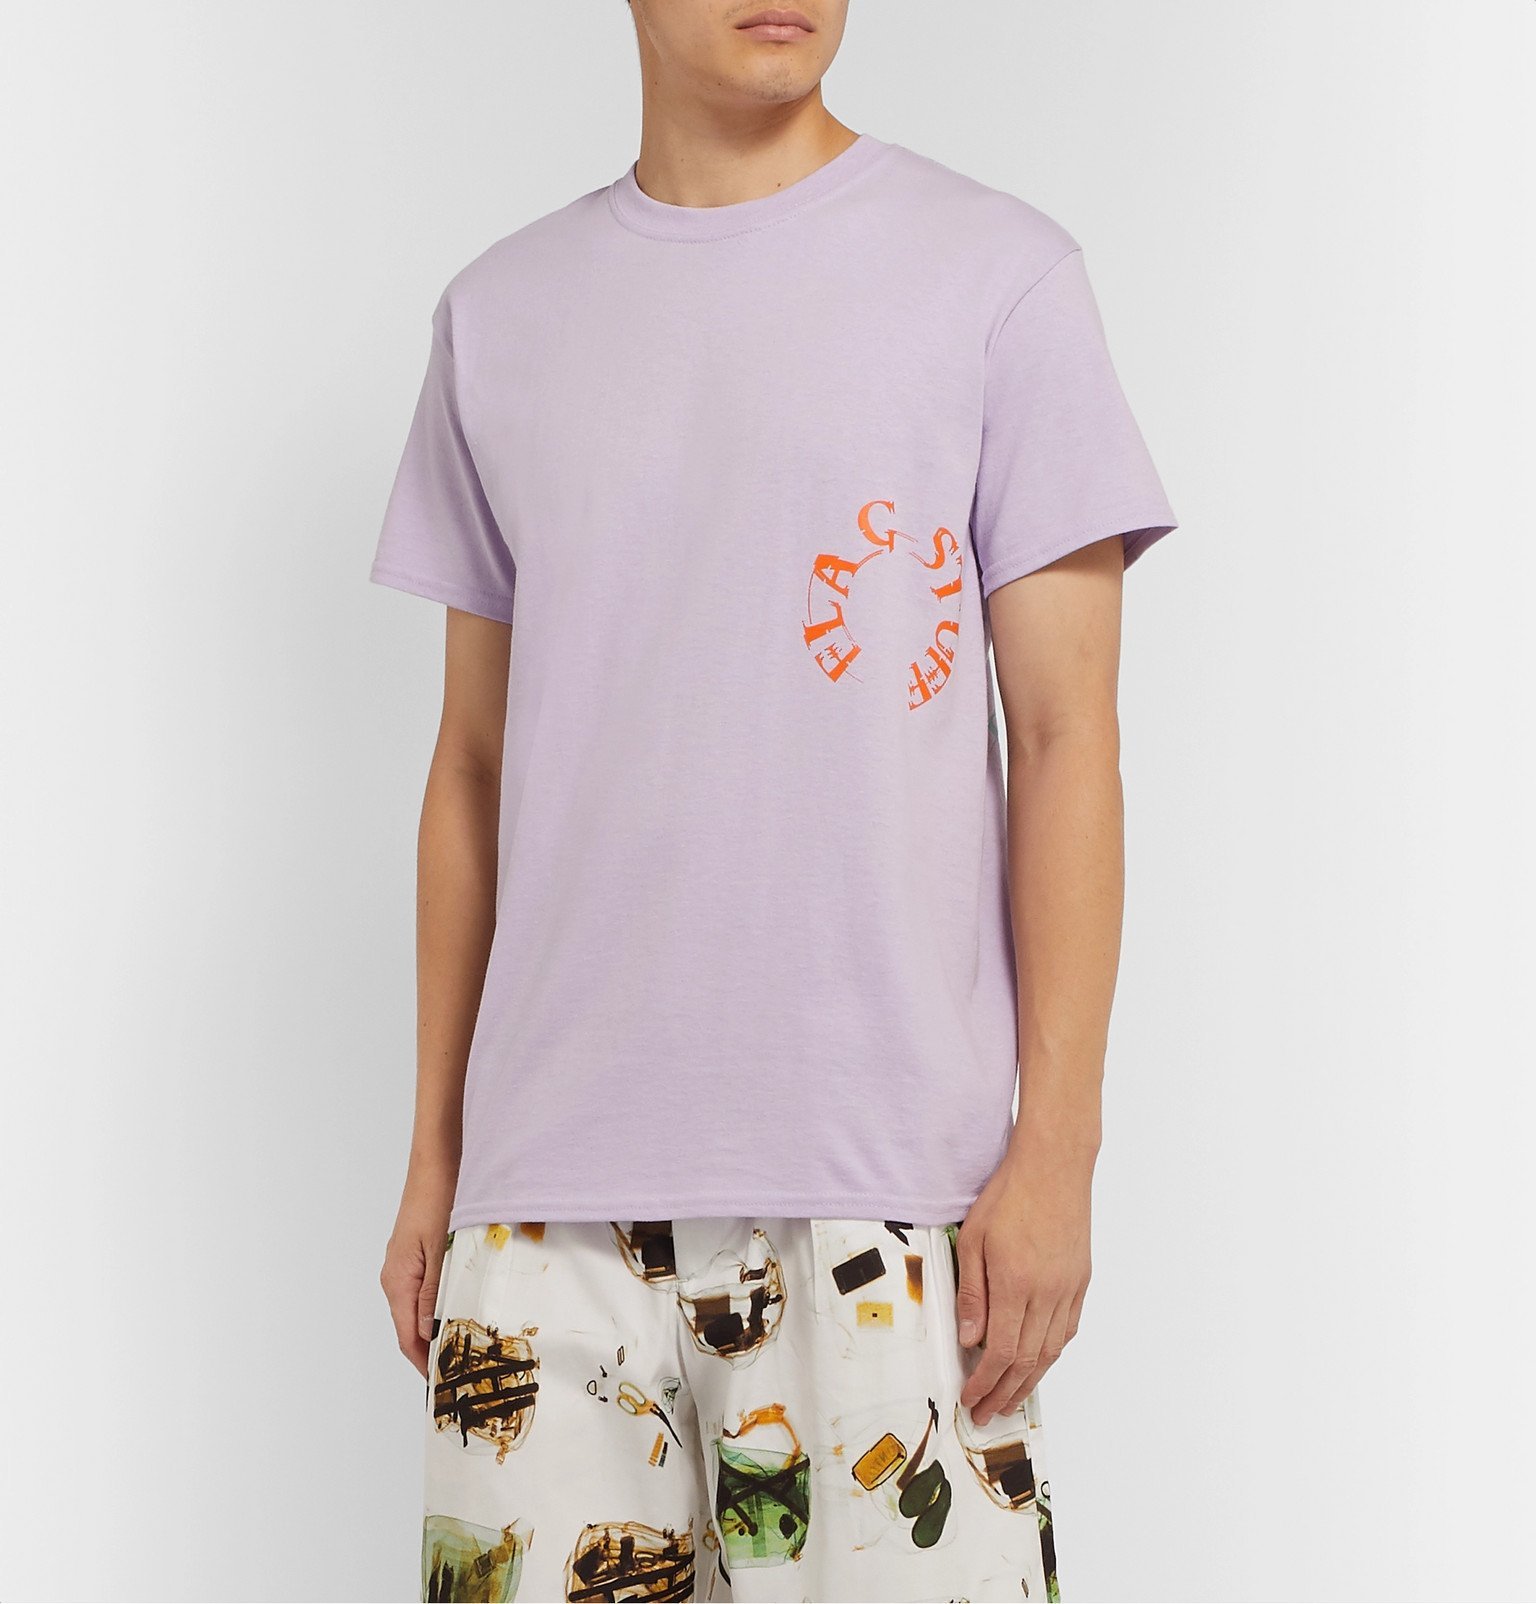 Flagstuff - Printed Cotton-Jersey T-Shirt - Purple Flagstuff